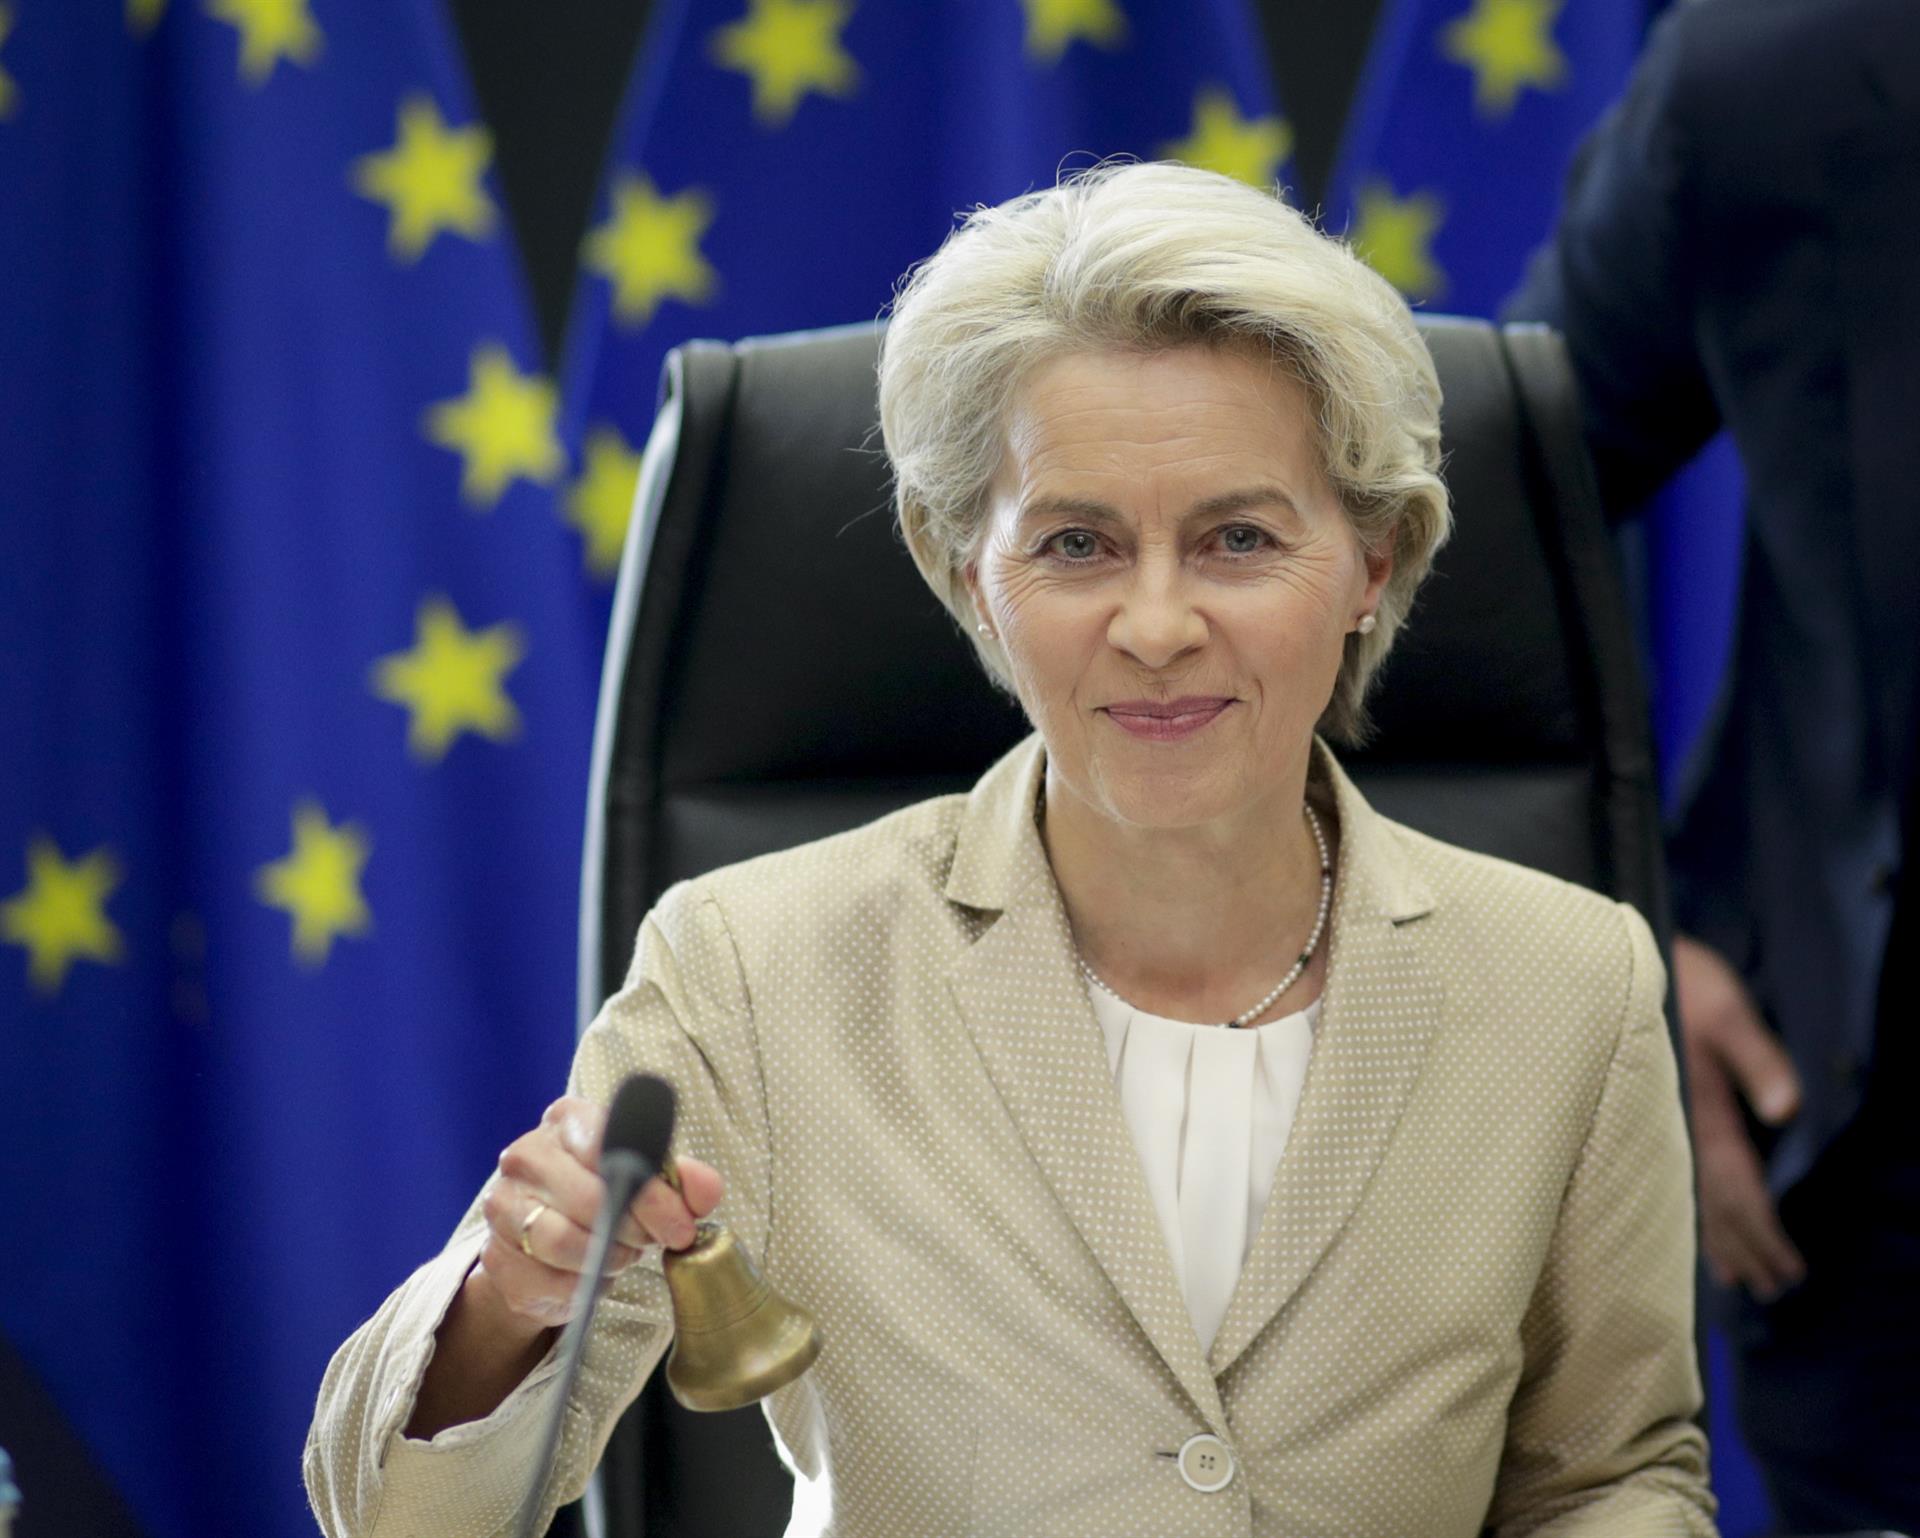 La presidenta de la Comisión Europea, Ursula von der Leyen, al inicio de la reunión semanal de la Comisión Europea en Bruselas este miércoles. EFE/EPA/OLIVIER HOSLET